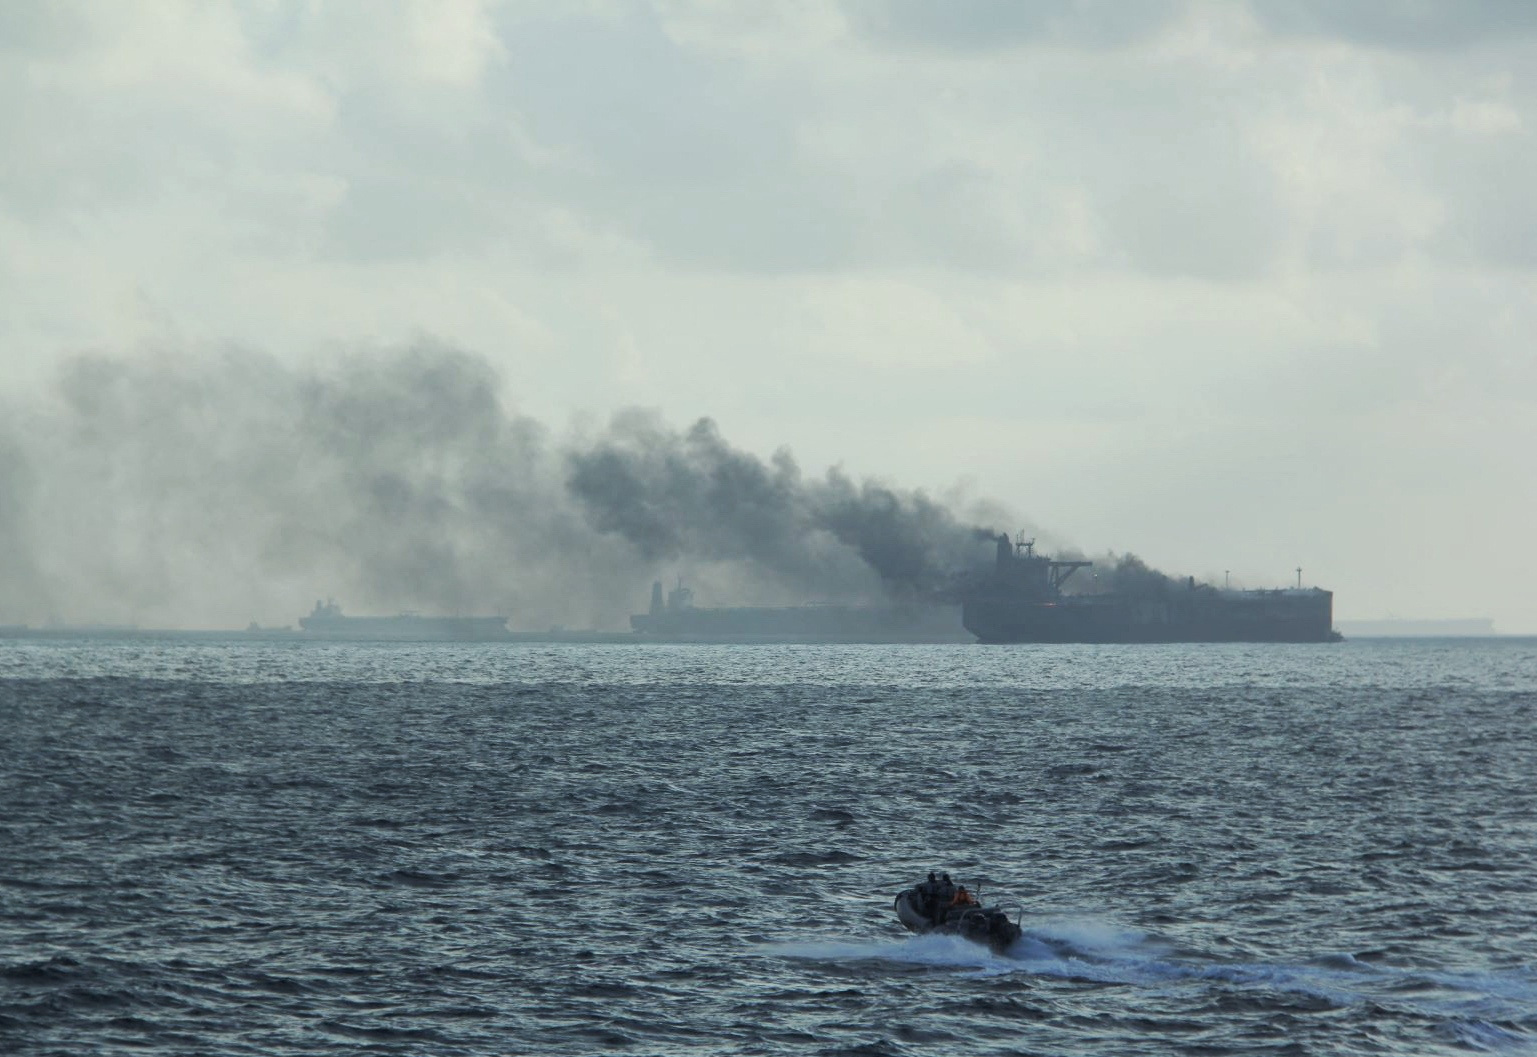  2油槽船白礁海域起火 2伤者送狮城救治